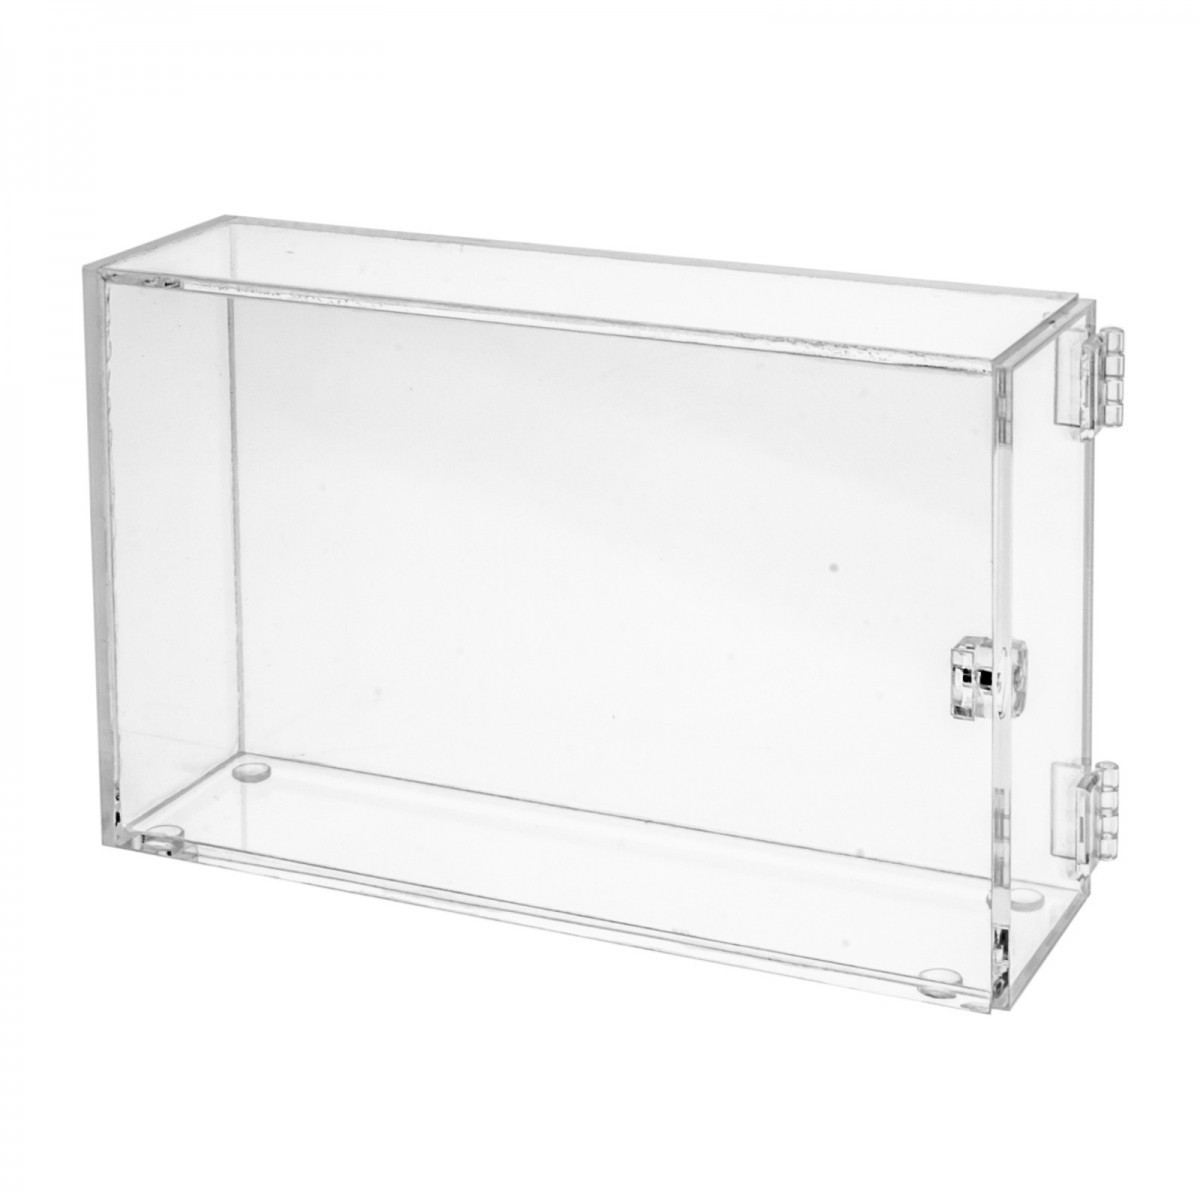 Teca in plexiglass trasparente - Misure: 23 x 5,5 x H14 cm